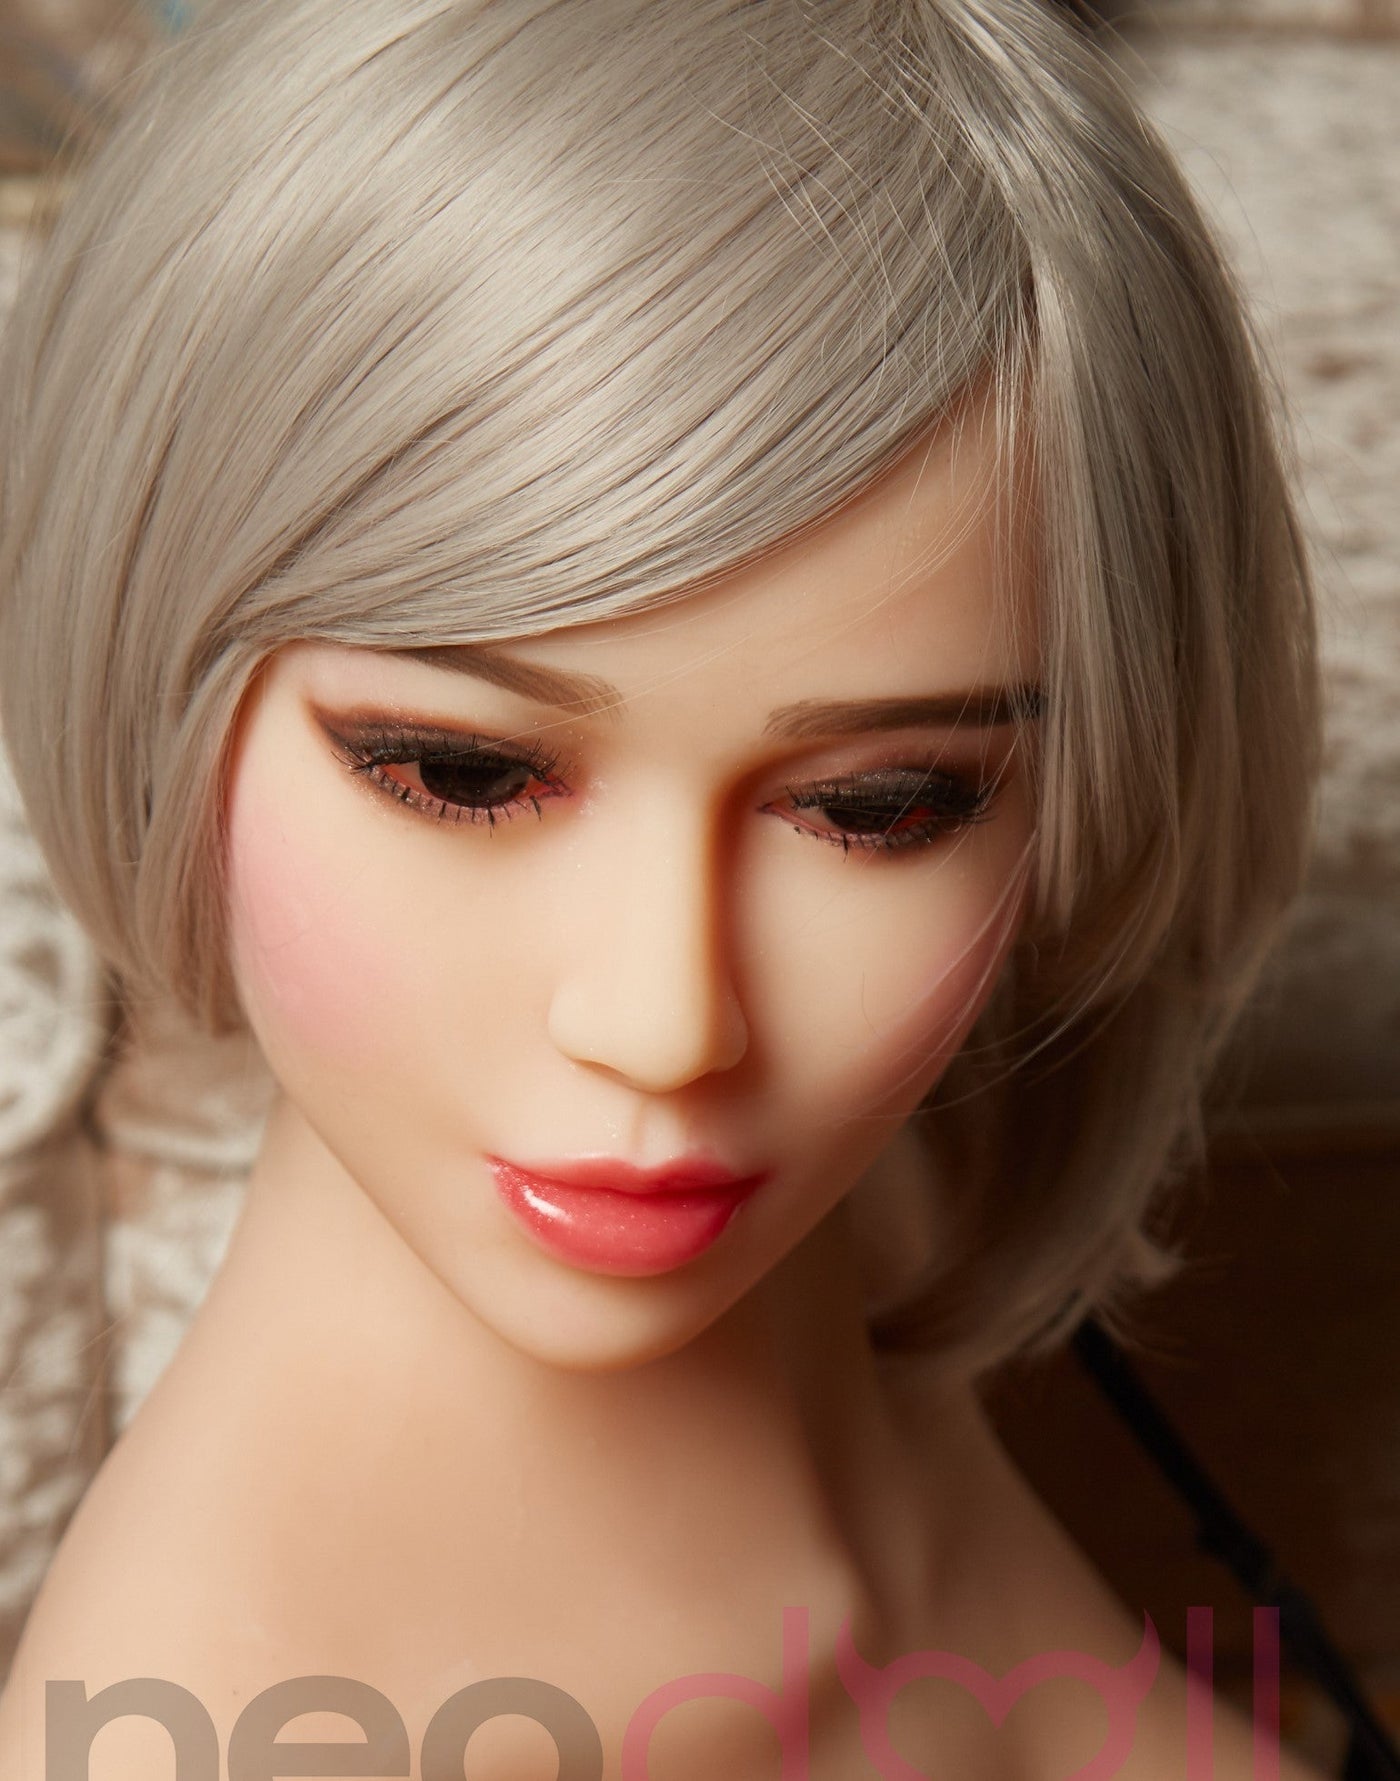 Allure Liliana Head - Sex Doll Head - M16 Compatible - Tan